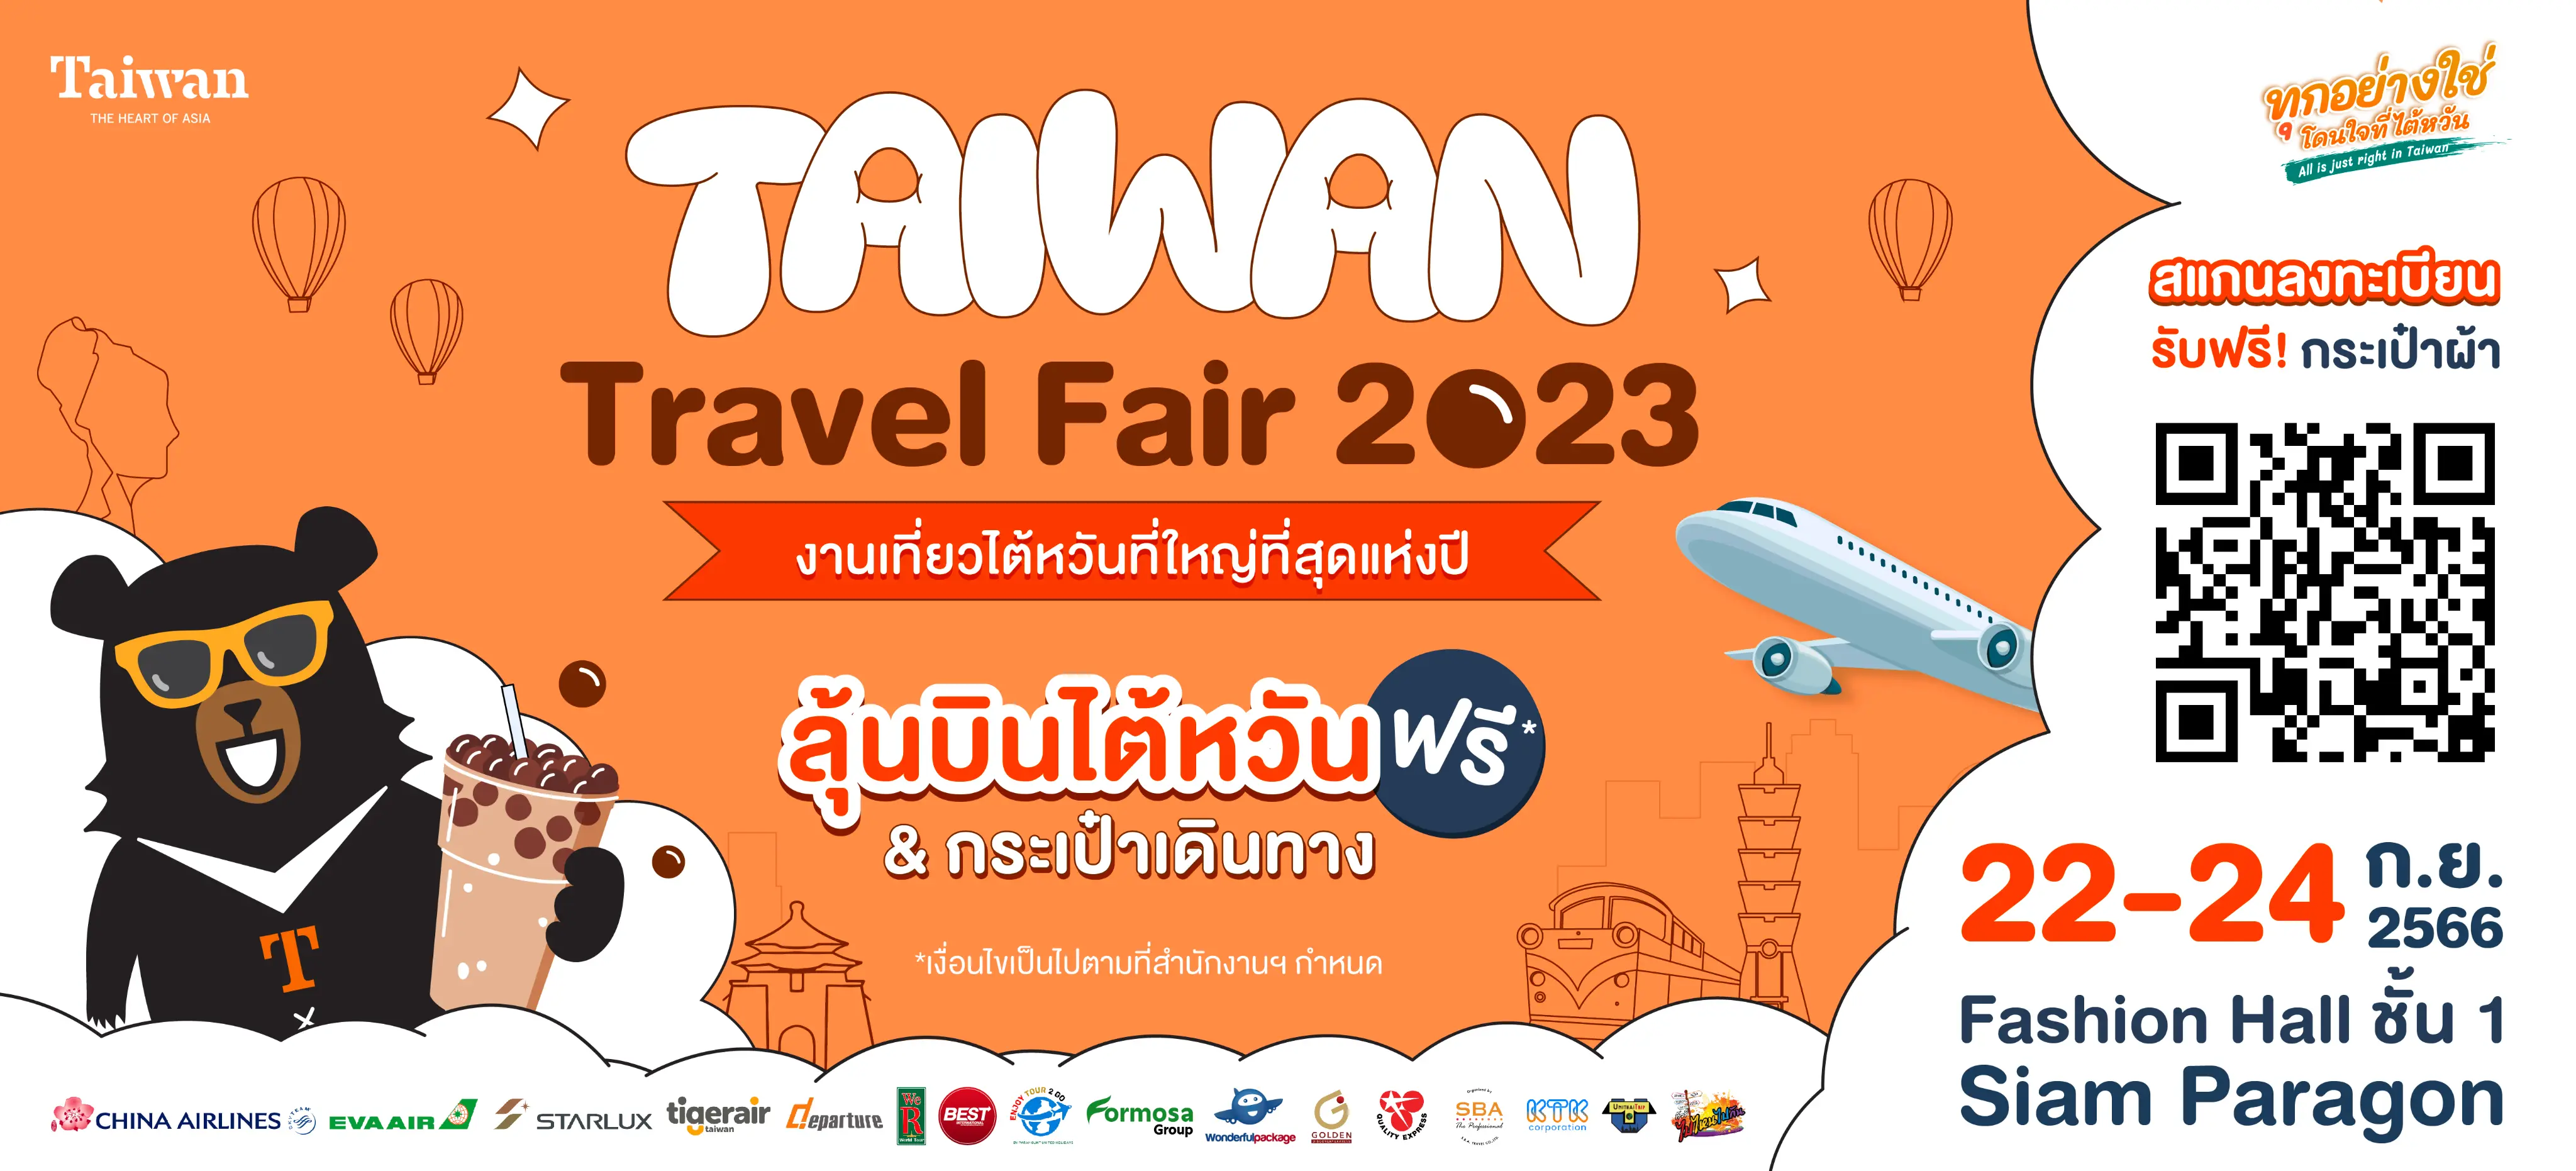 taiwan travel fair singapore